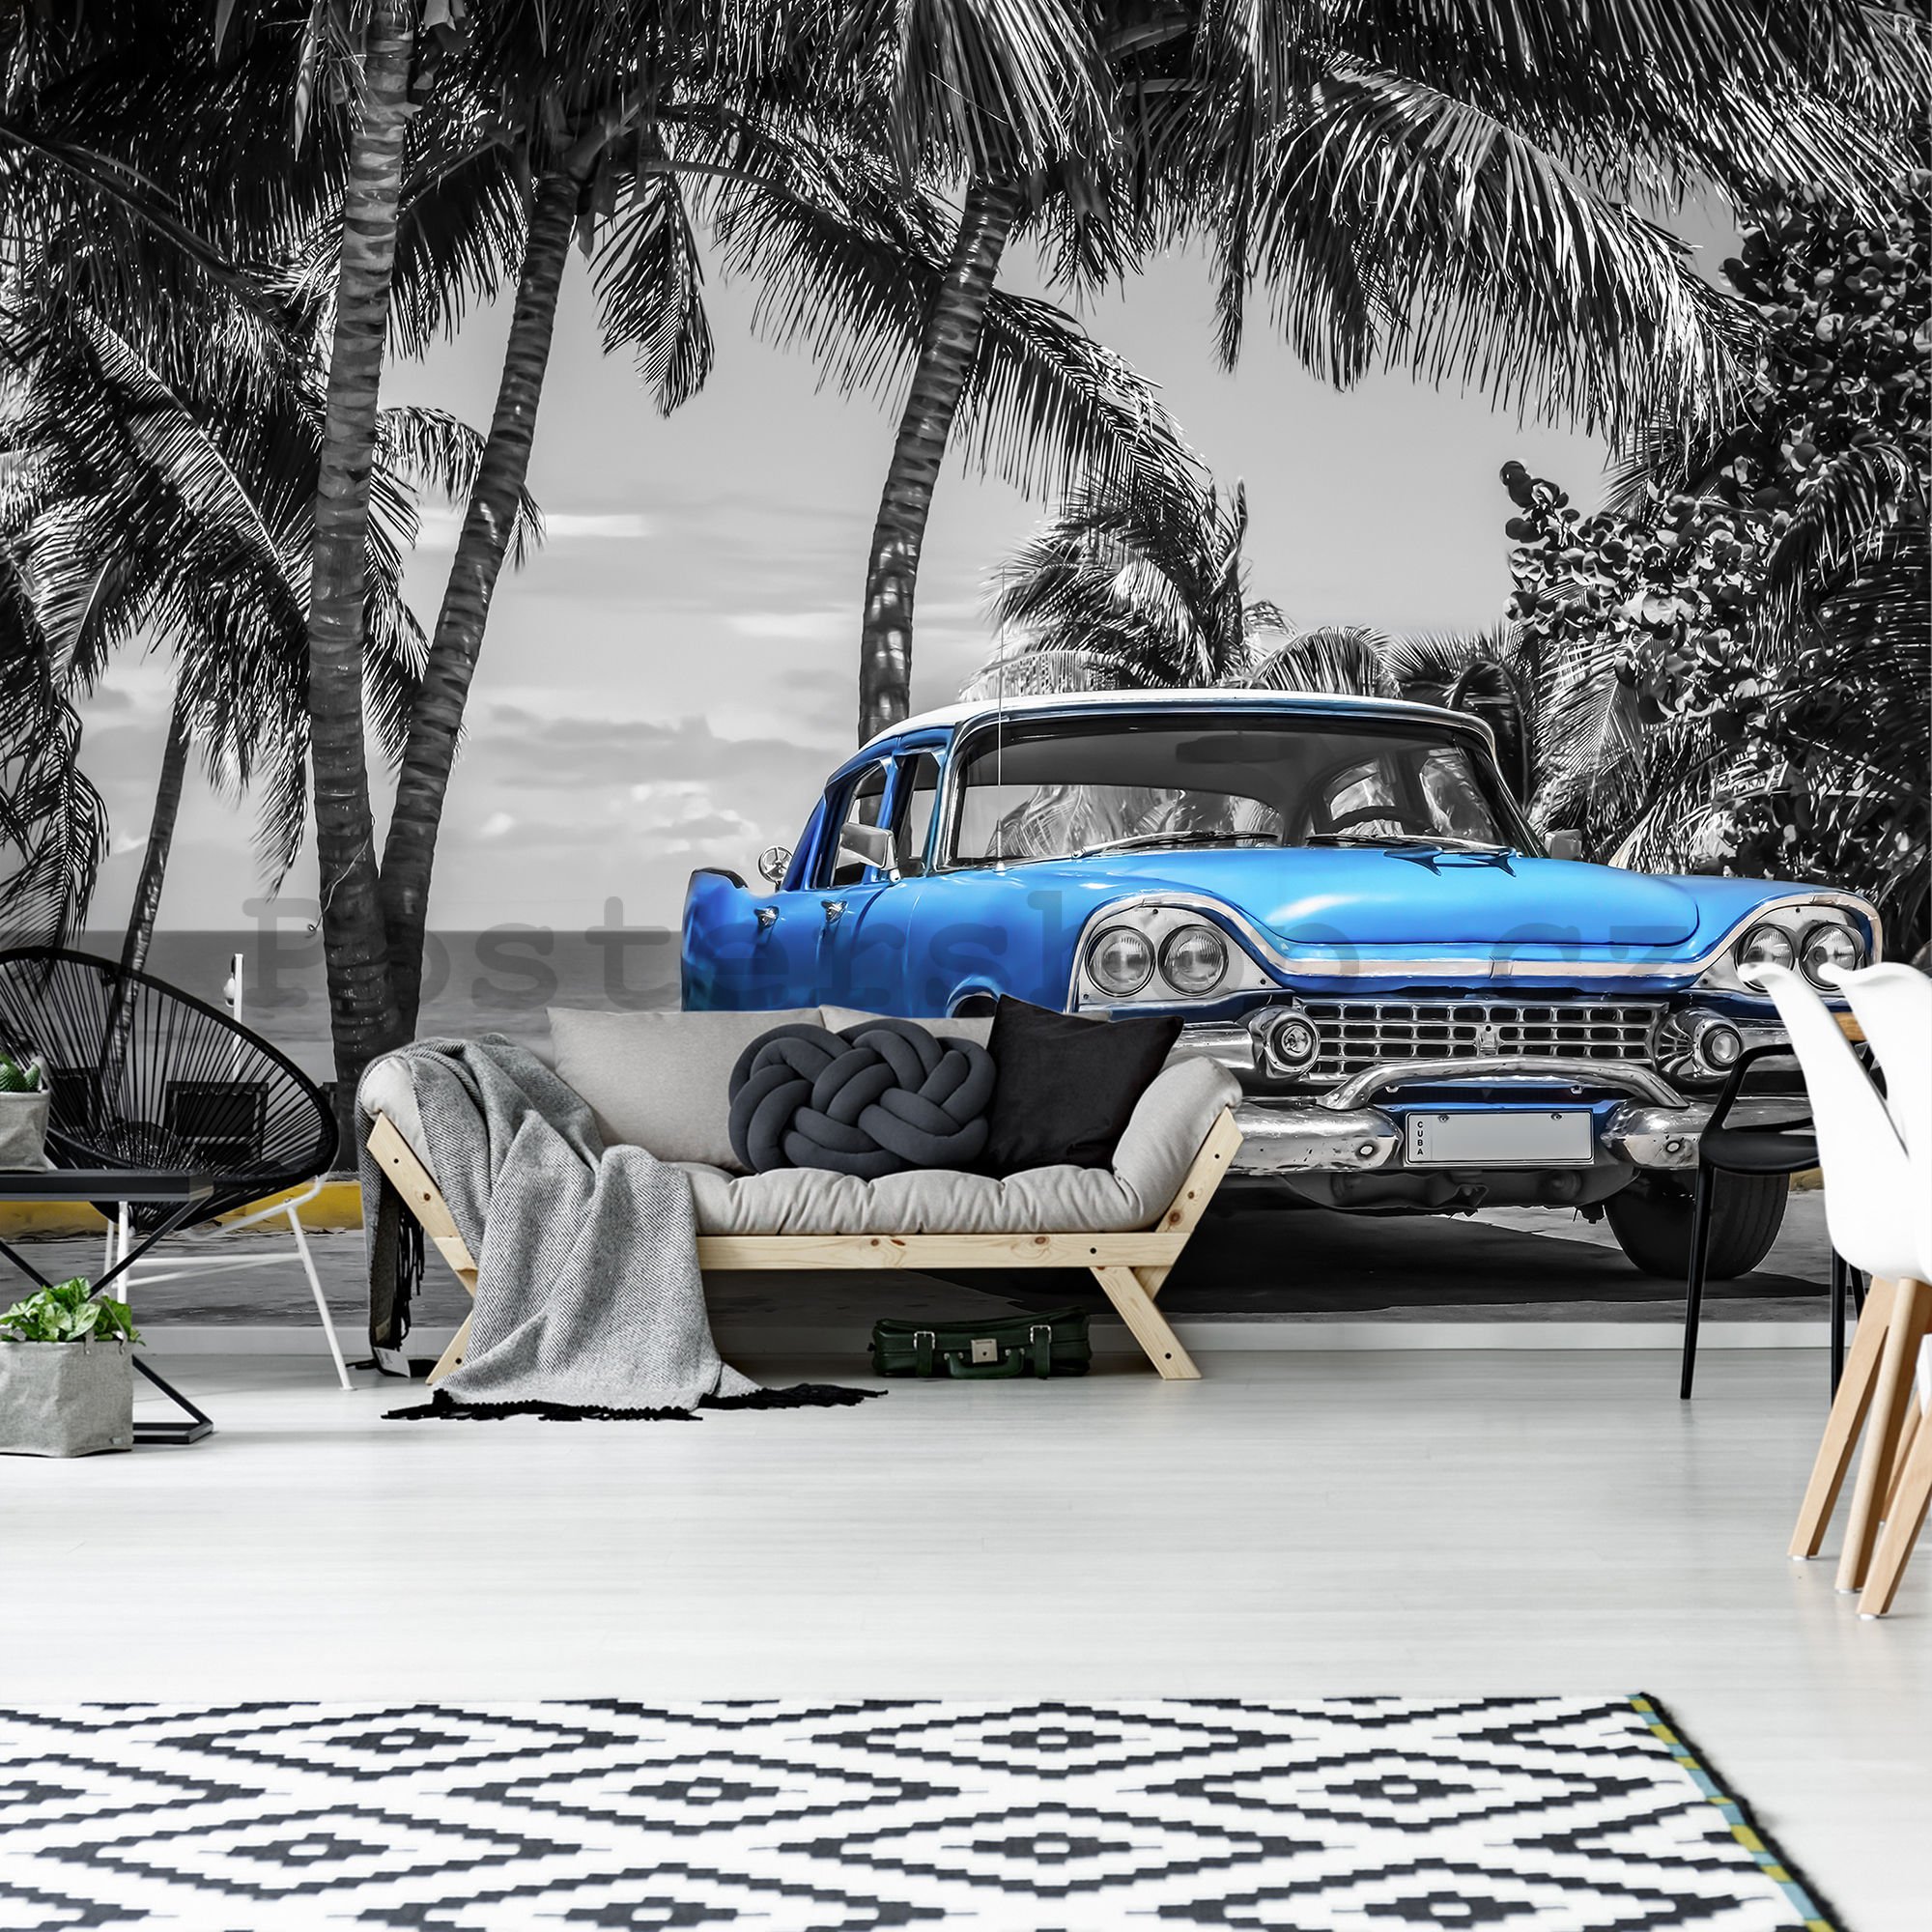 Fototapeta vliesová: Kuba modré auto u moře - 184x254 cm